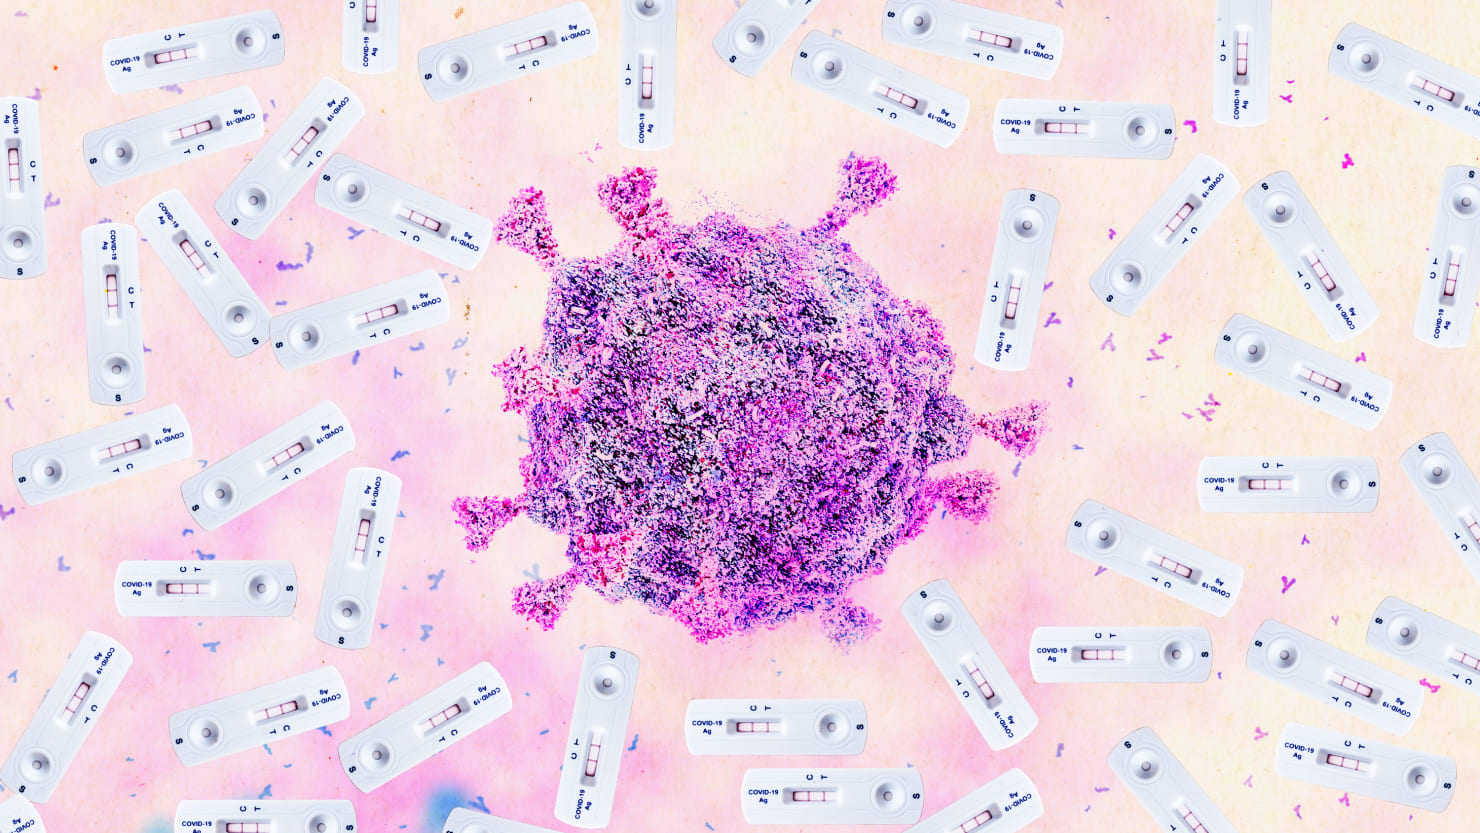 To může být alternativa, které se vědci obávají koronaviru